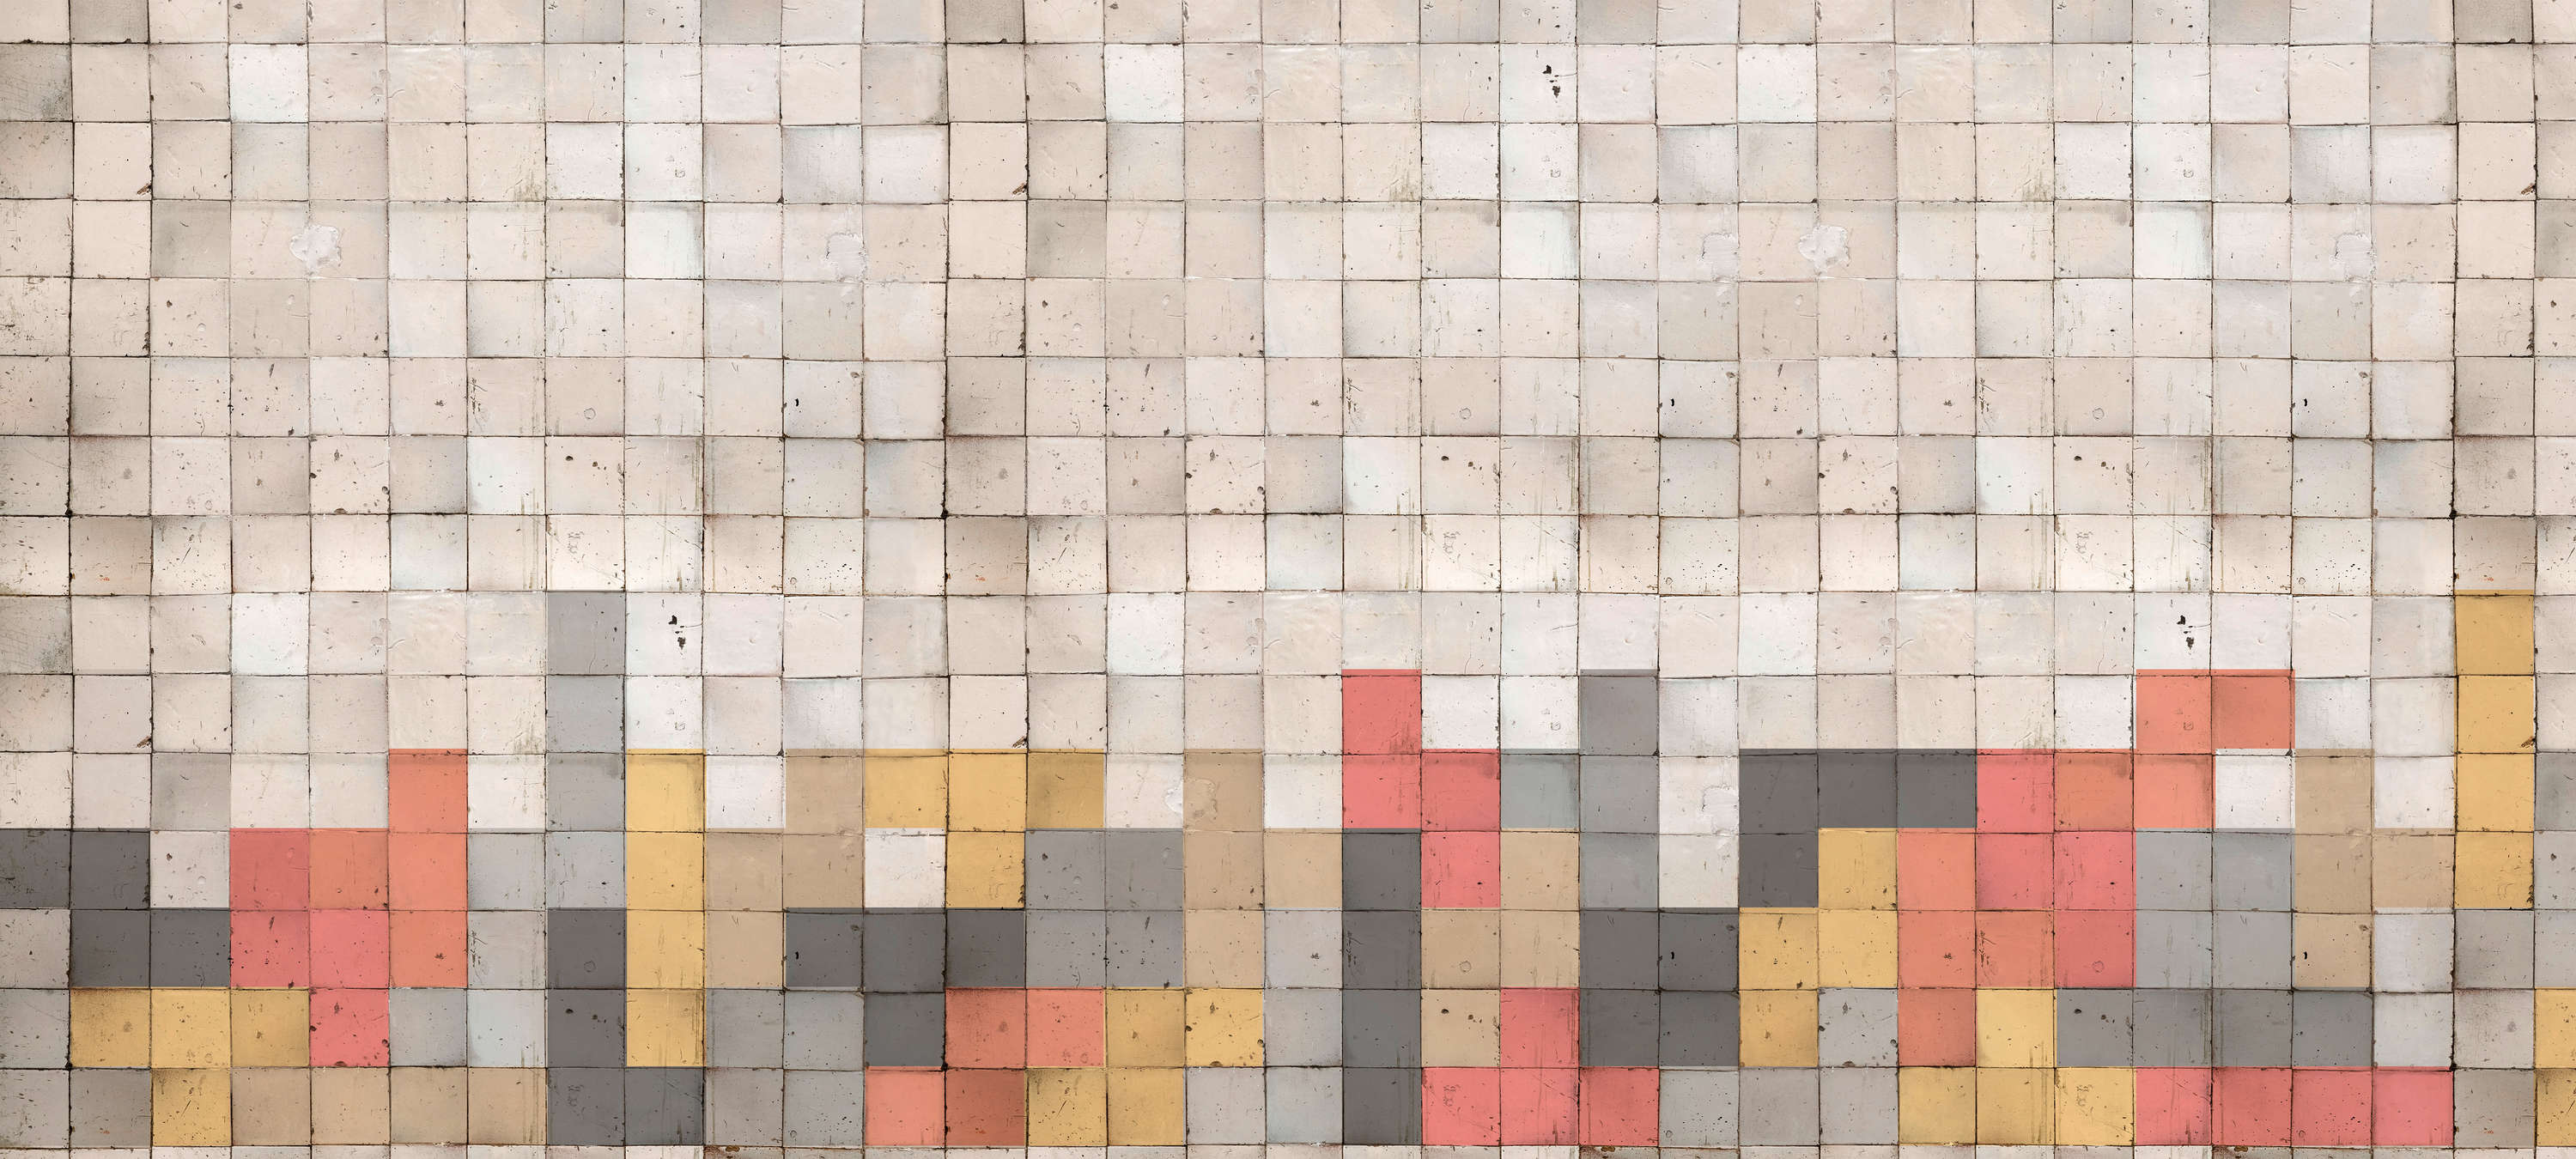             Papel pintado de mosaico con diseño de bloques de hormigón - Gris, naranja, amarillo
        